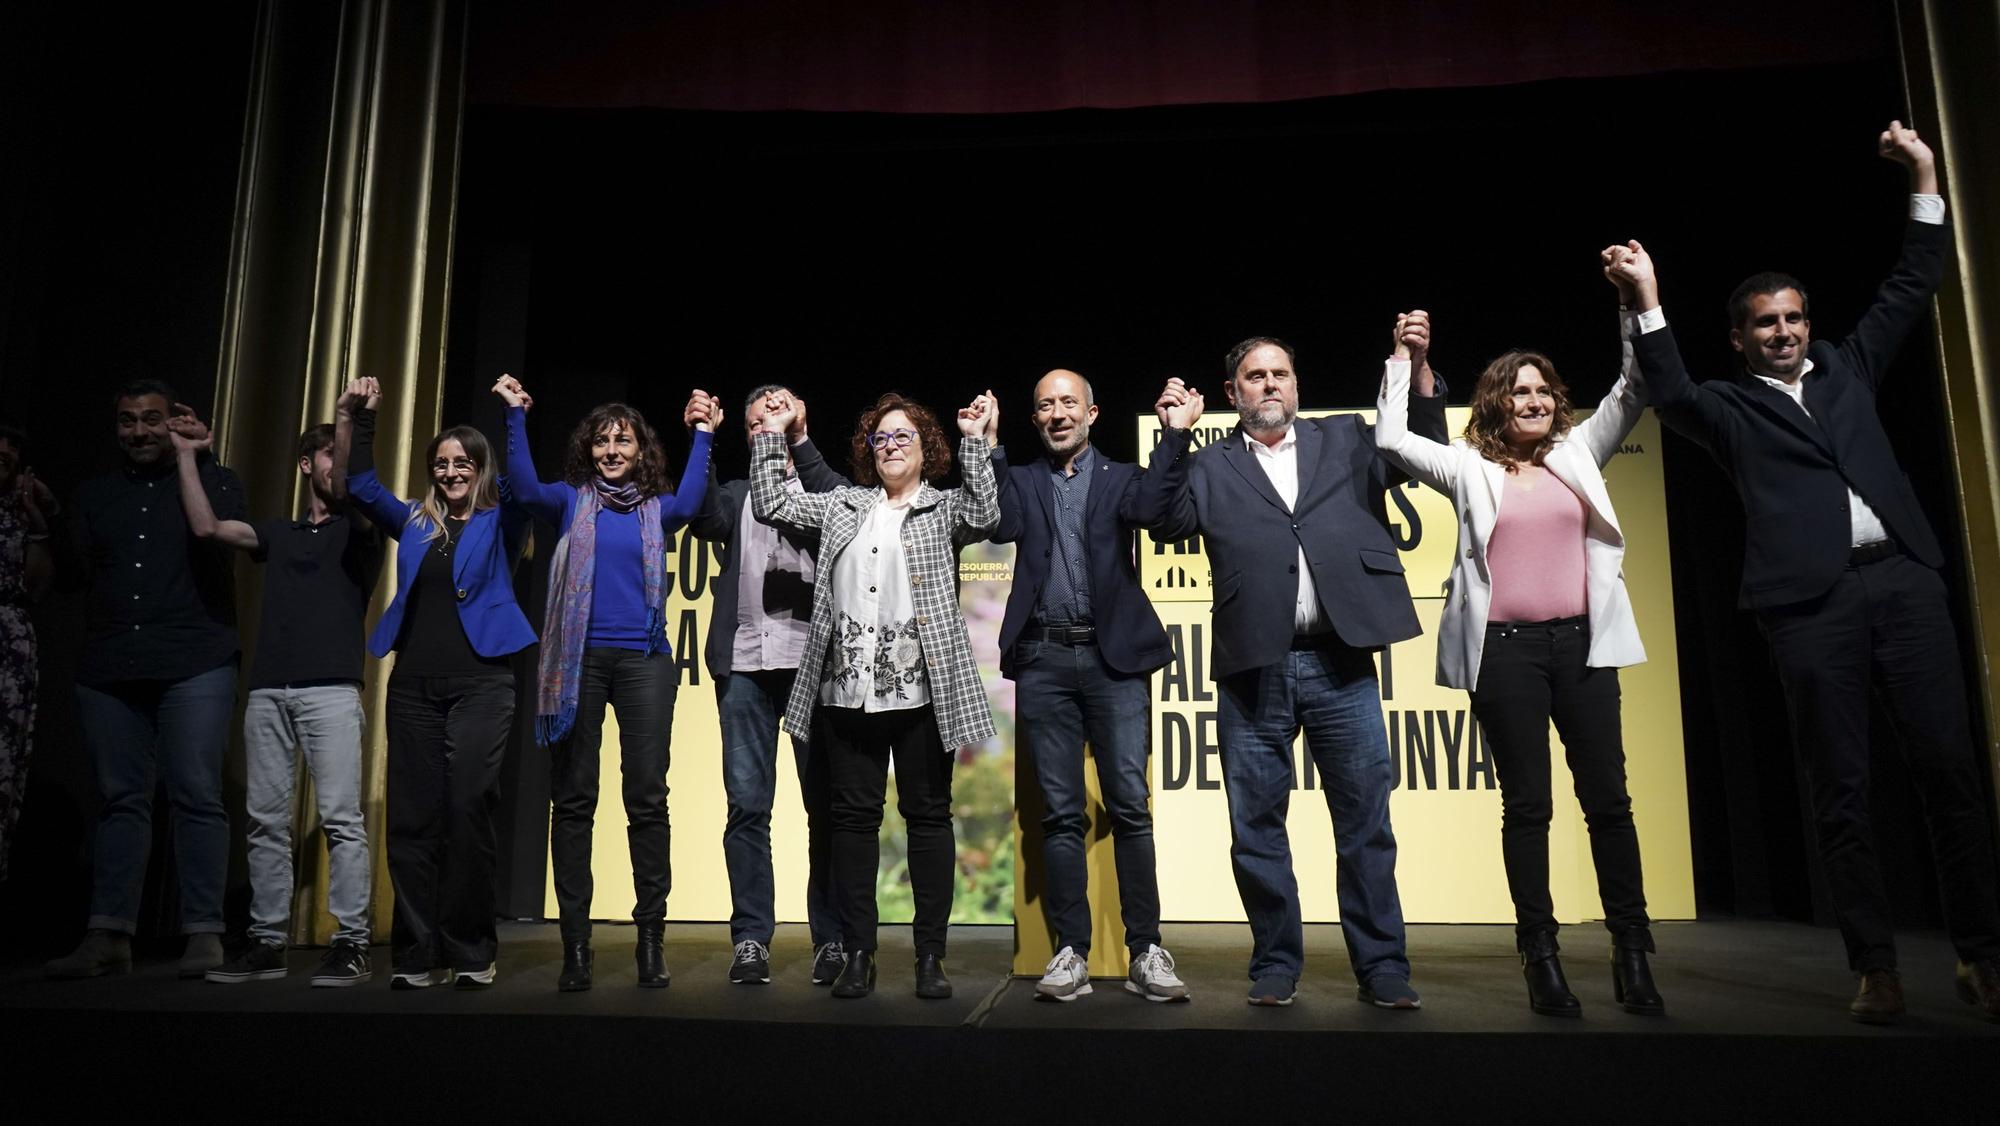 L'acte de campanya electoral d'ERC a Manresa, en fotos